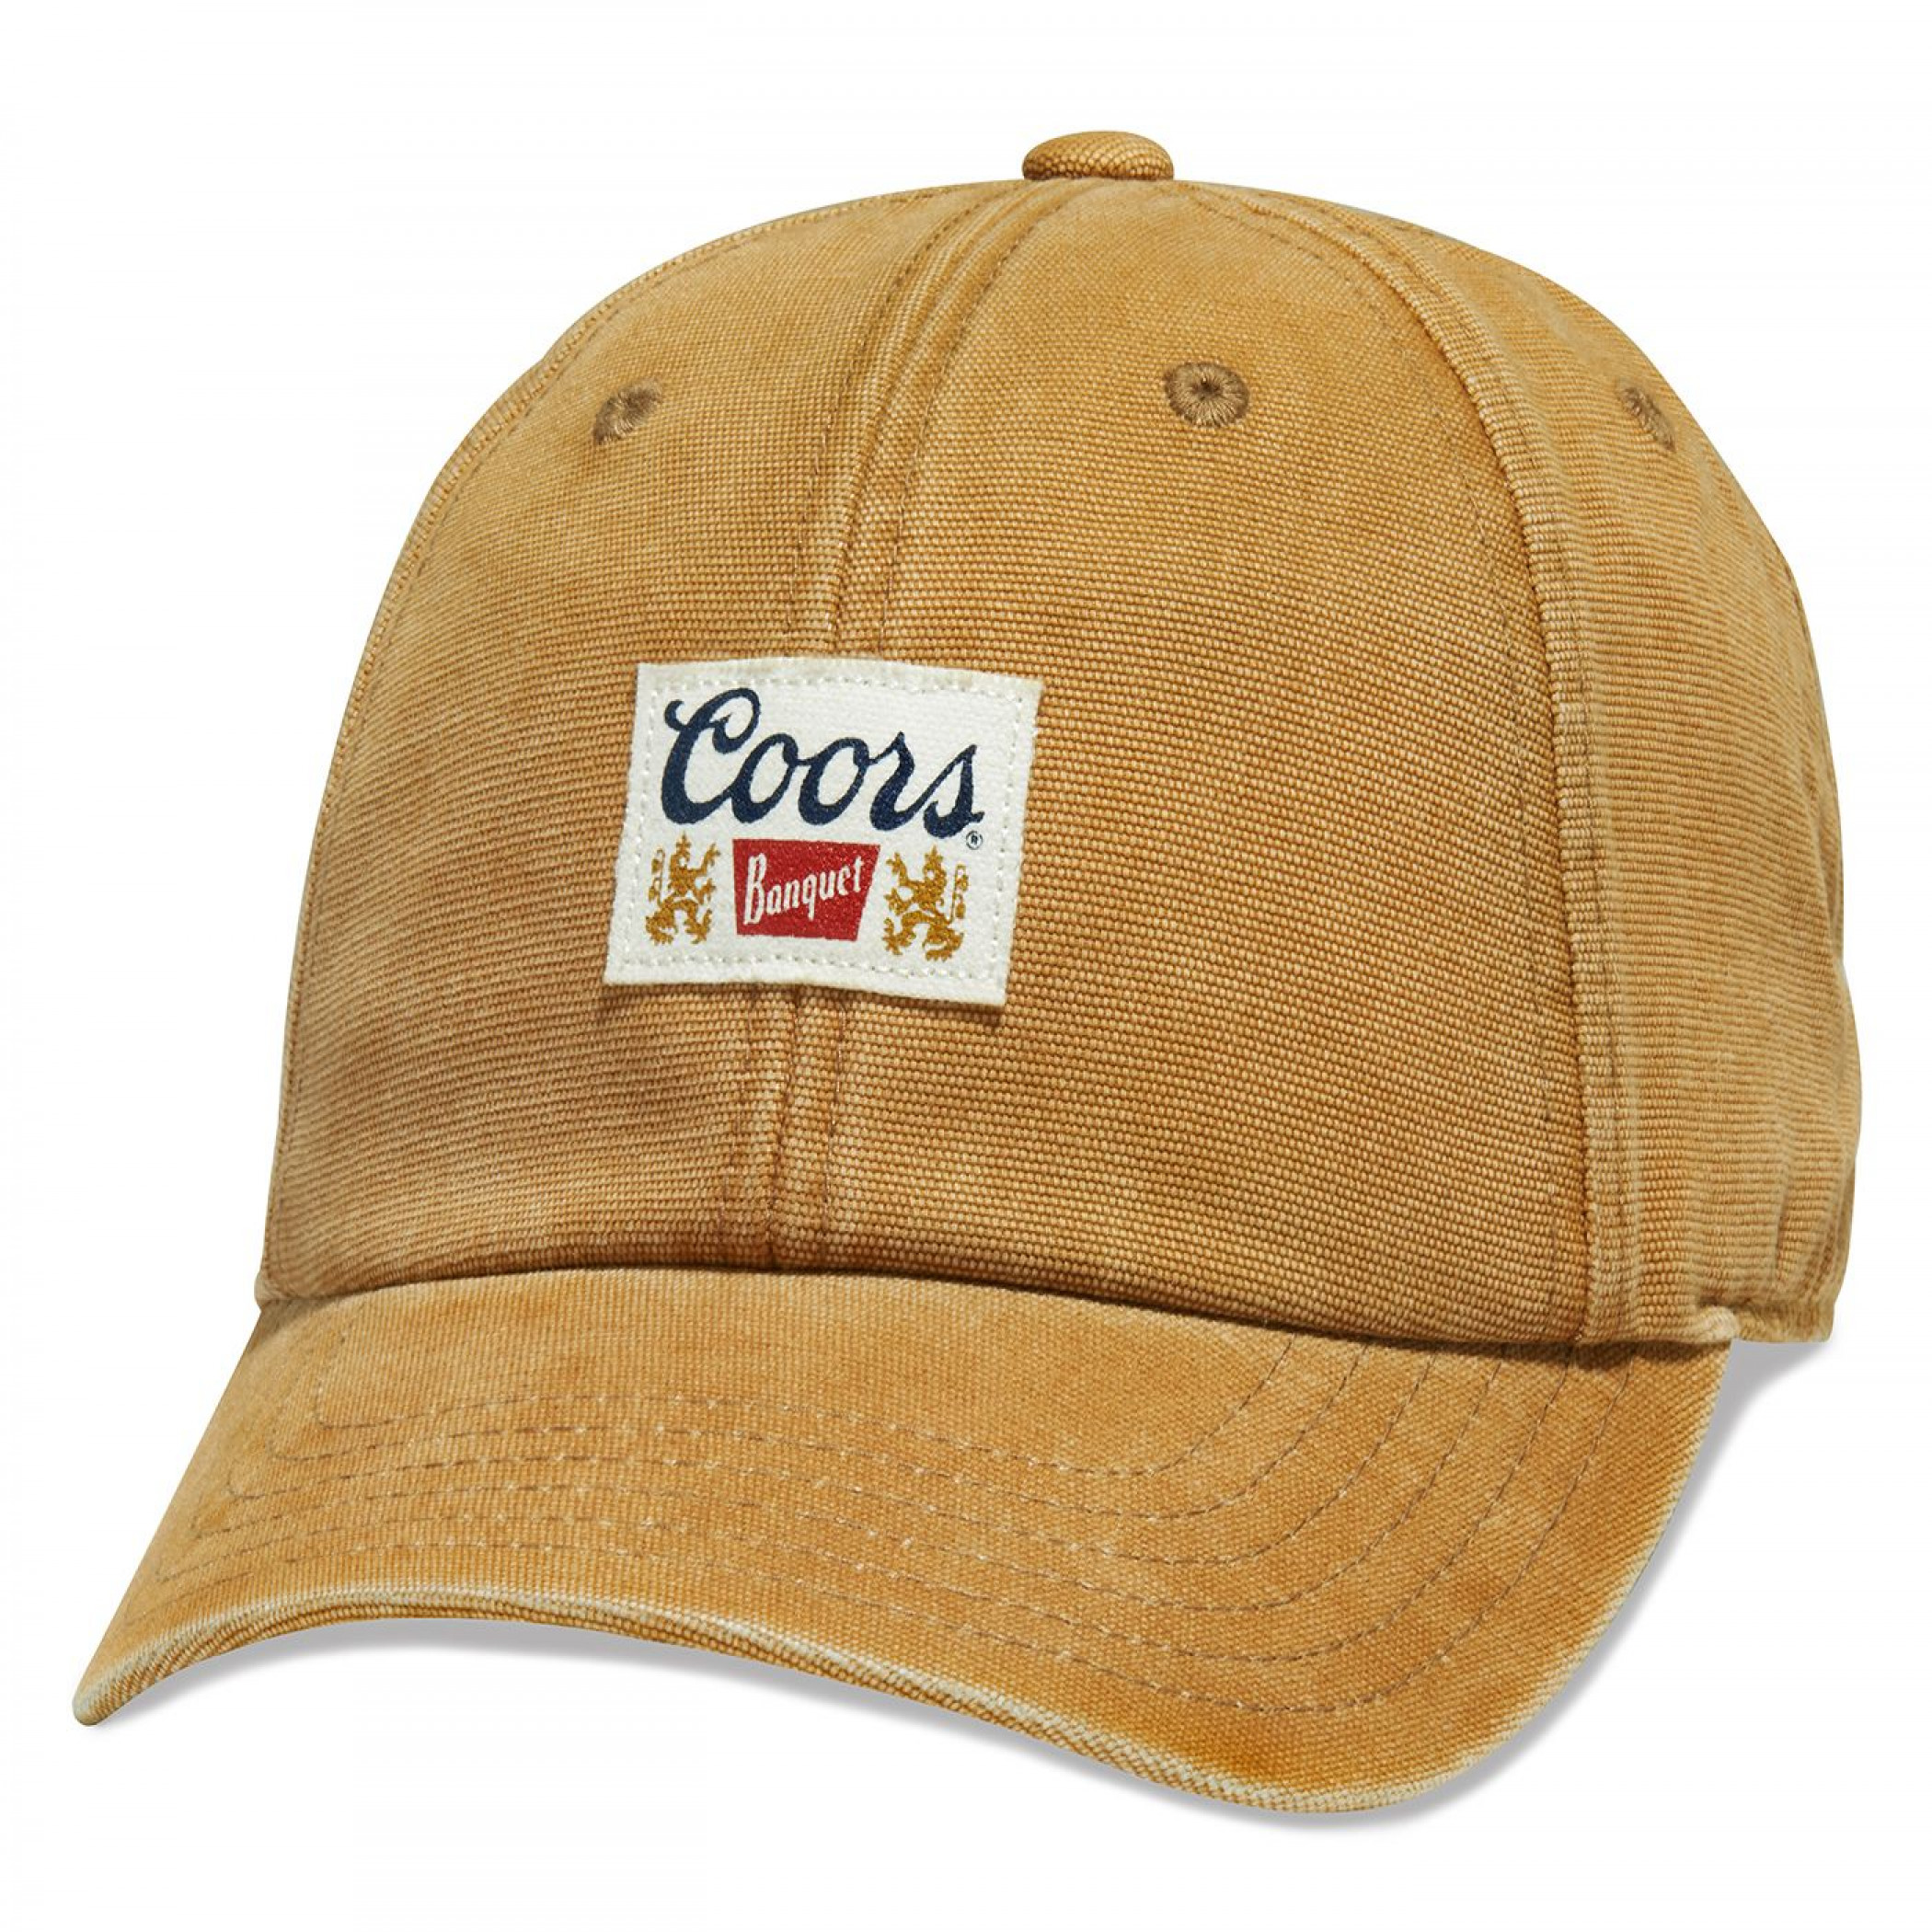 Coors Banquet Beer Golden Dad Hat